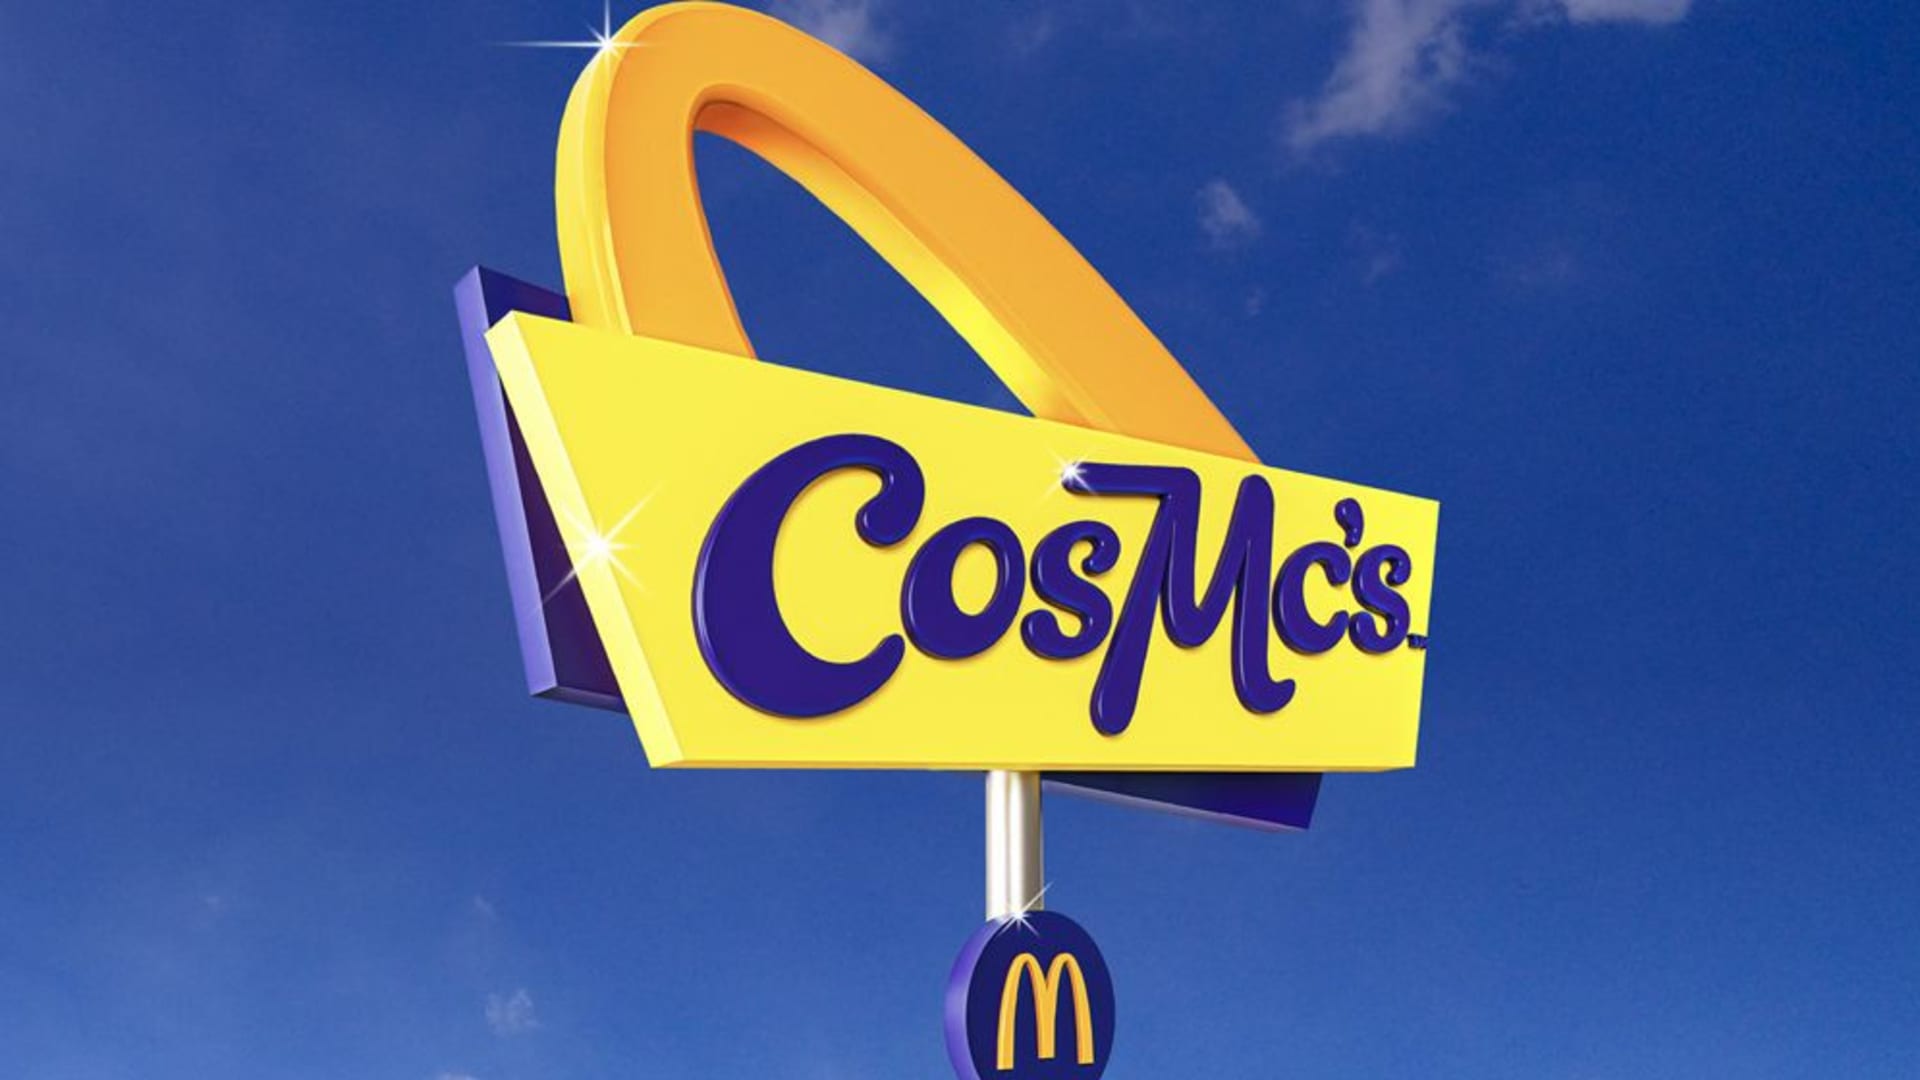 McDonald’s abre seu primeiro restaurante CosMc esta semana